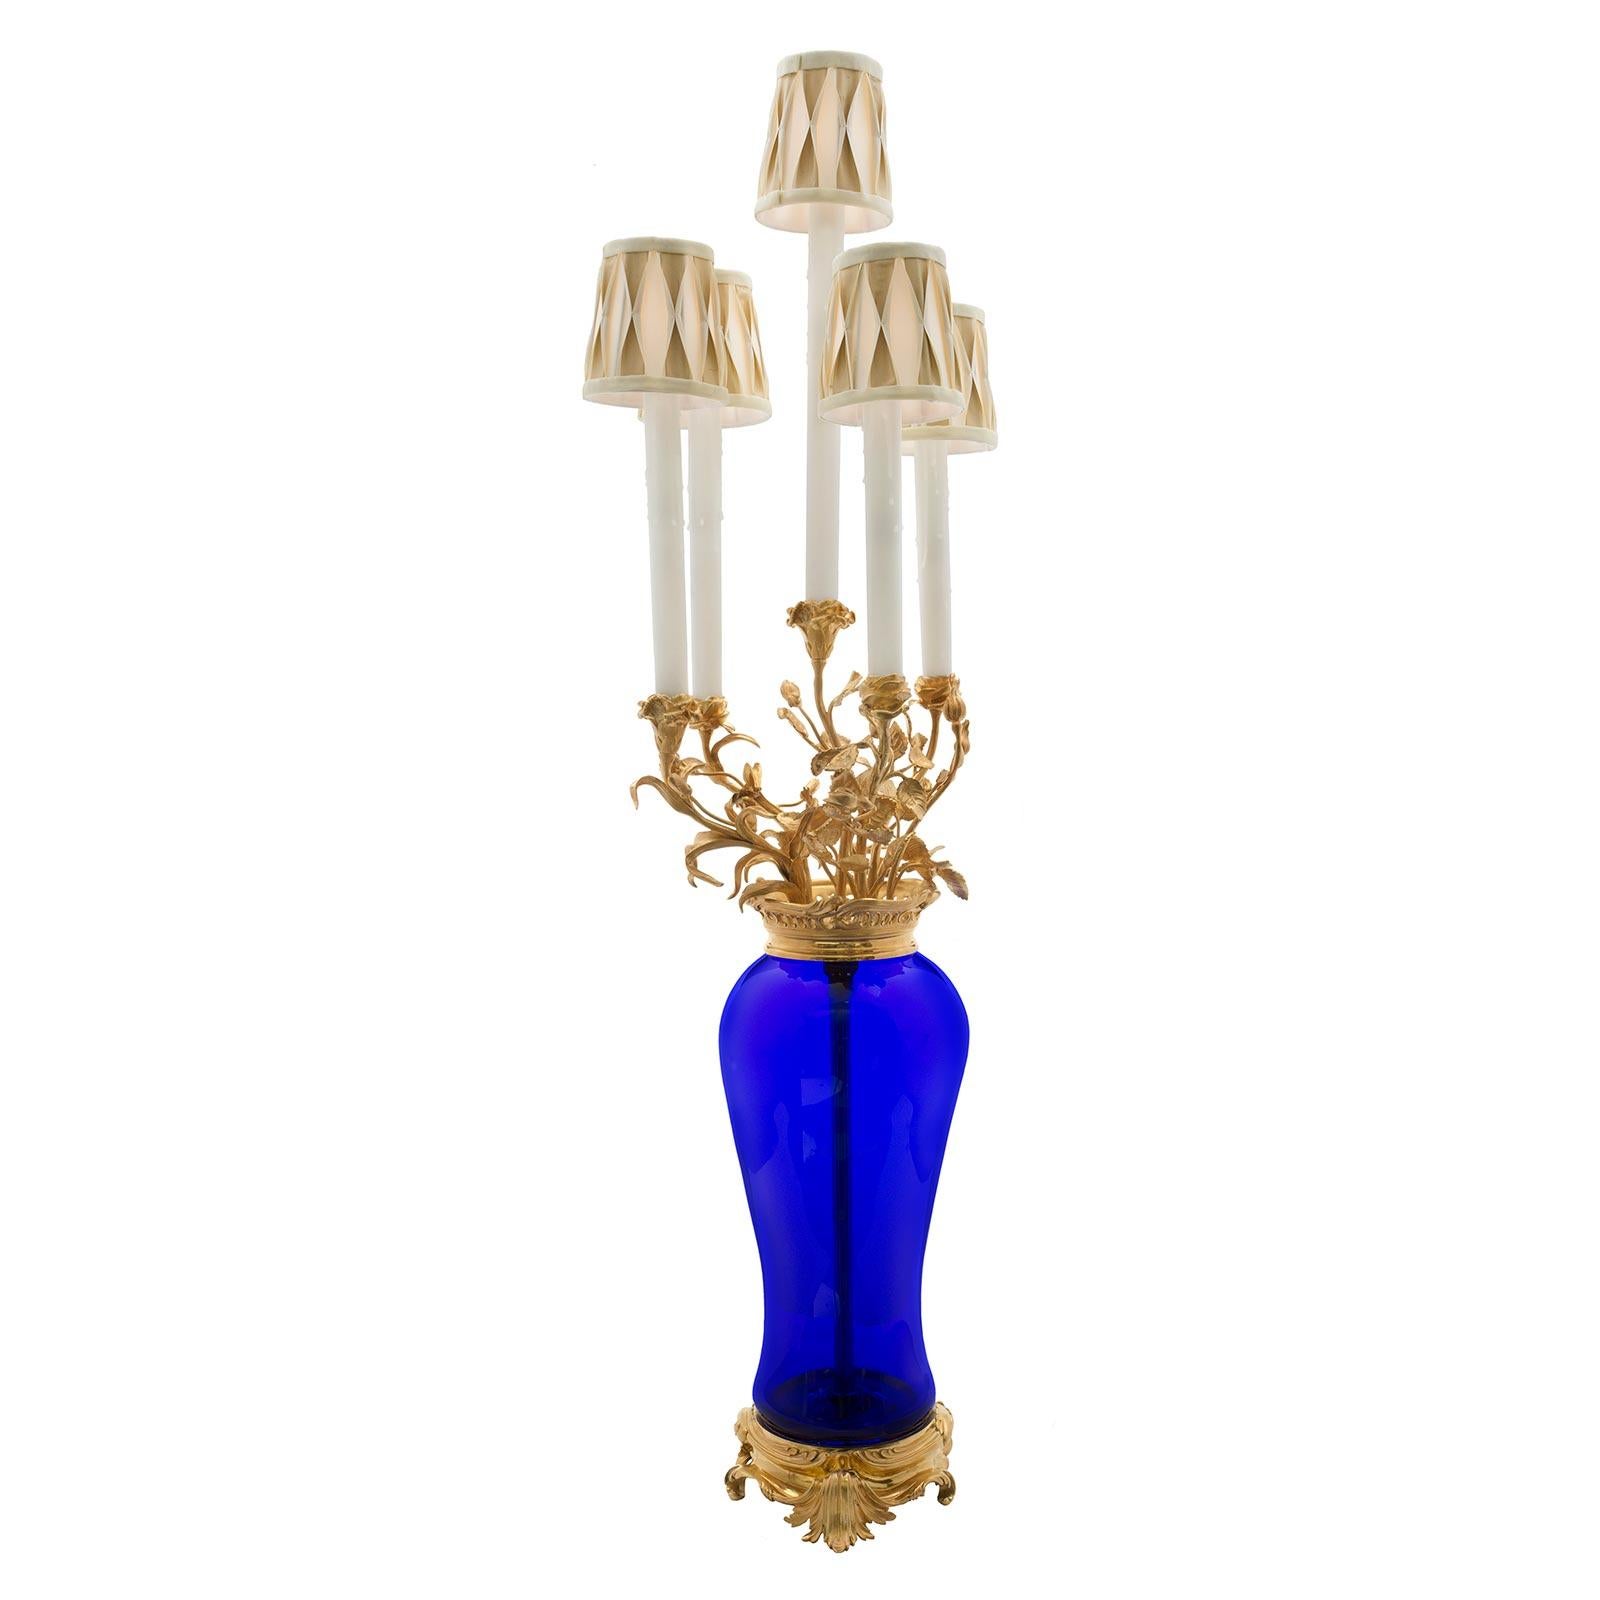 Eine schöne Französisch 19. Jahrhundert Louis XVI st. mundgeblasenem kobaltblauem Glas und Ormolu Kandelaber in eine Lampe montiert. Die Lampe wird von einem eleganten, mit Blättern verzierten Ormolu-Sockel unter dem schlanken, mundgeblasenen